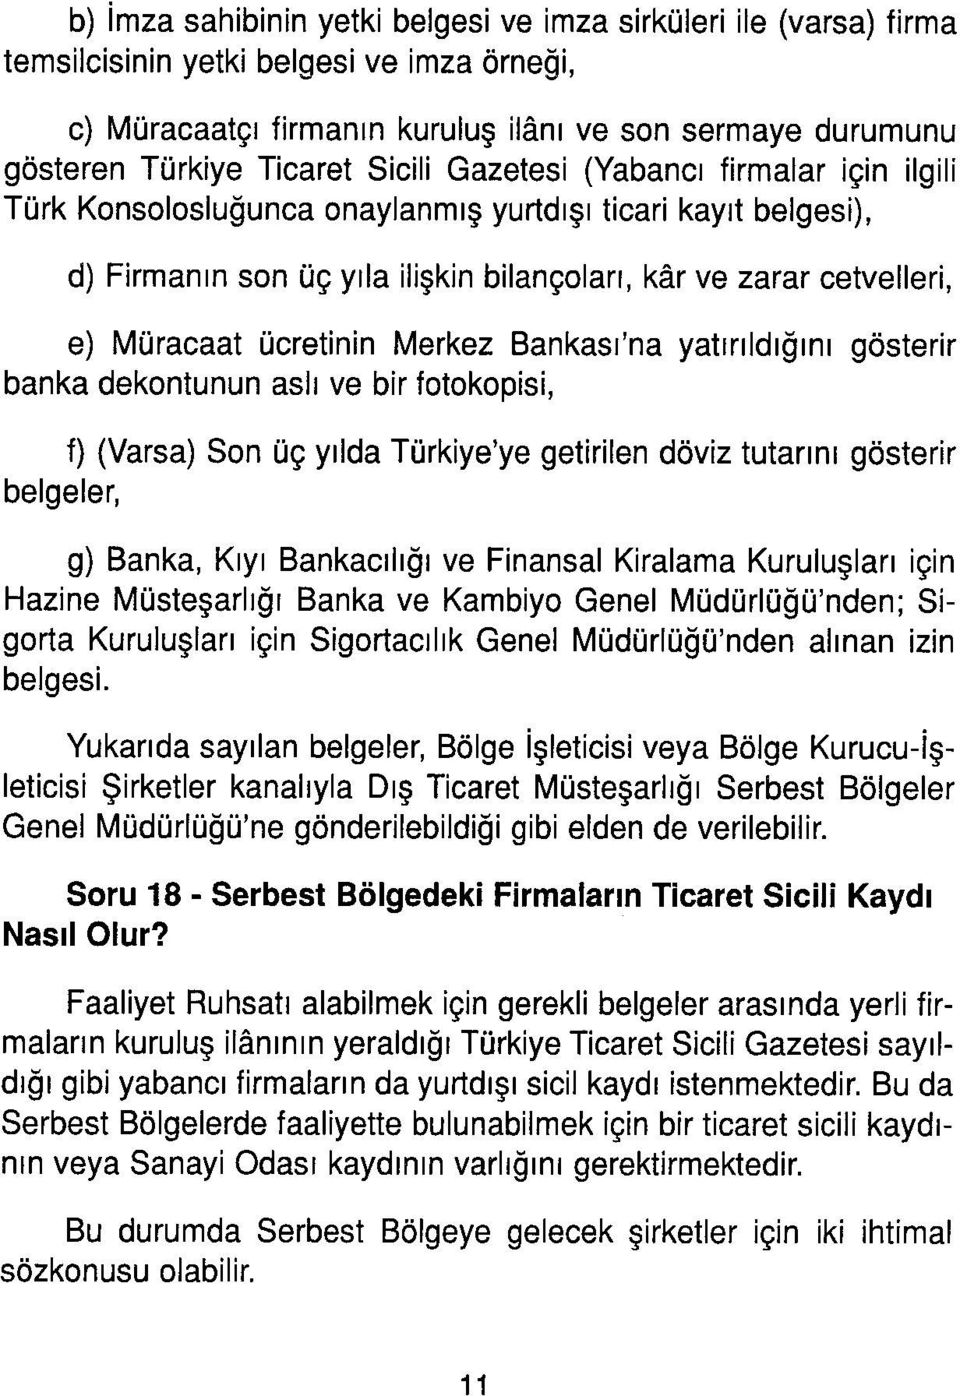 ücretinin Merkez Bankası'na yatırıldığını gösterir banka dekontunun aslı ve bir fotokopisi, f) (Varsa) Son üç yılda Türkiye'ye getirilen döviz tutarını gösterir belgeler, g) Banka, Kıyı Bankacılığı